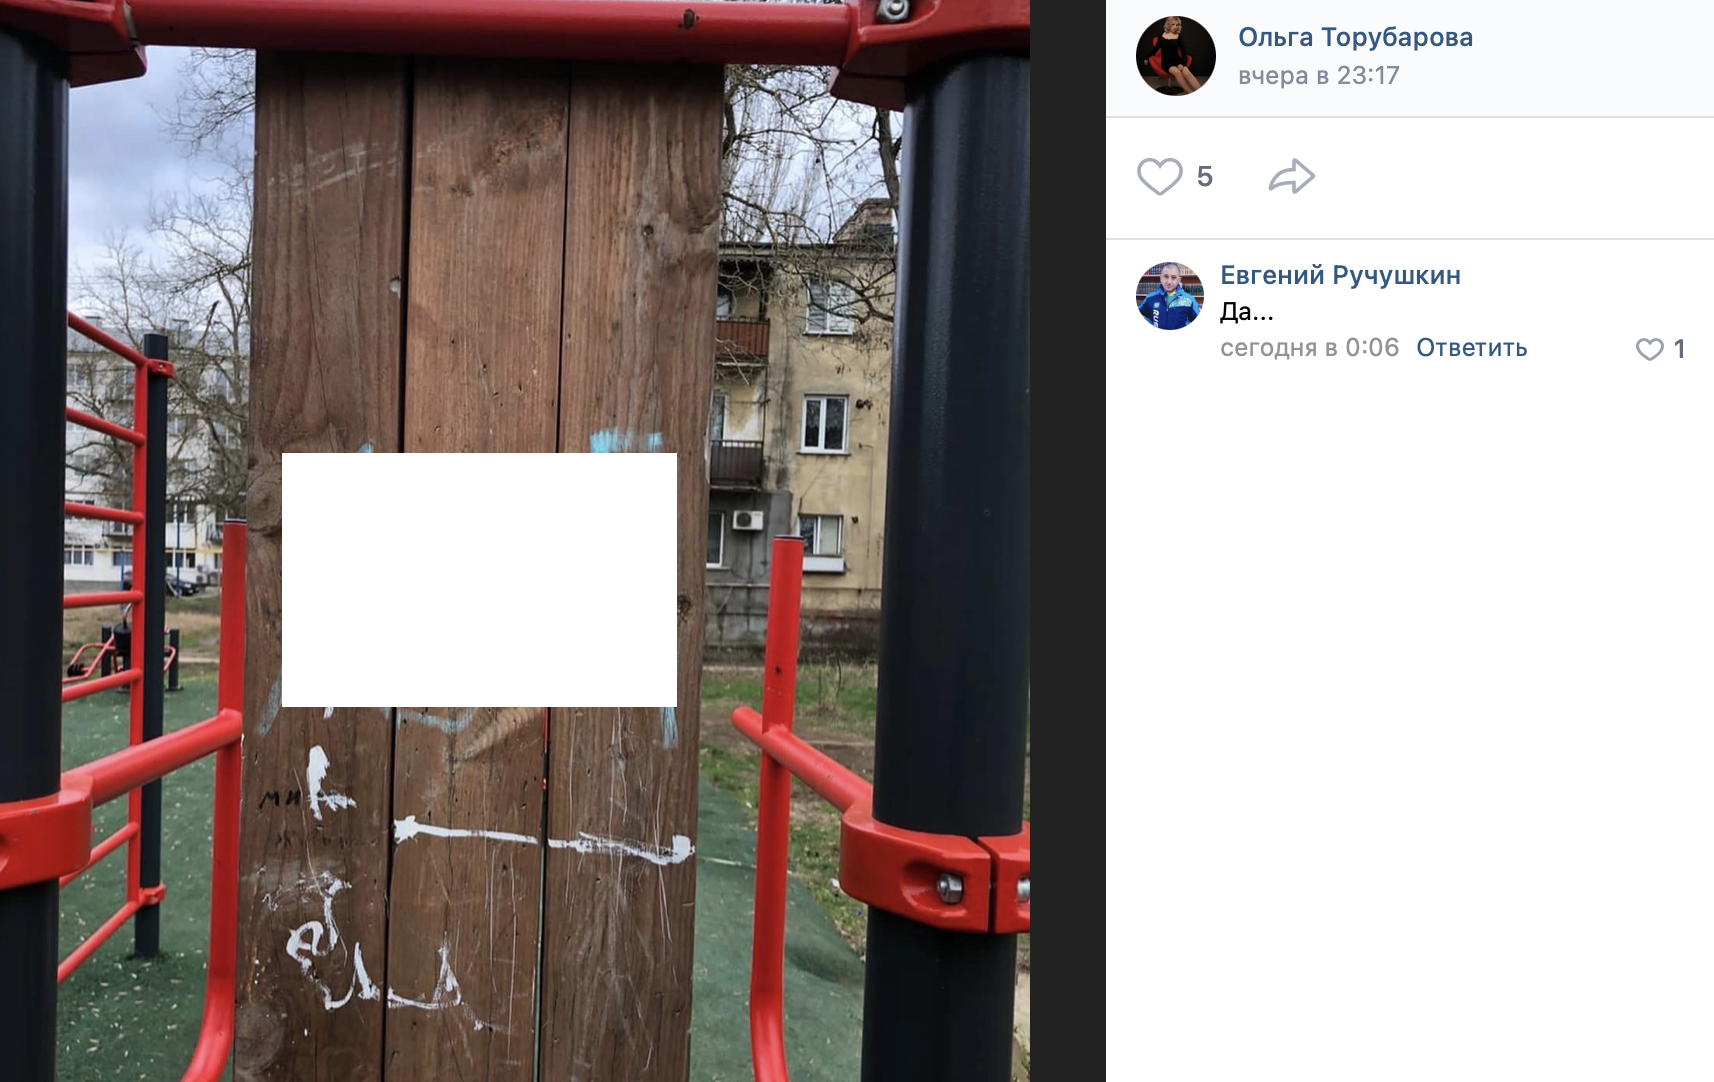 Министр спорта Крыма опубликовала фото нецензурной надписи в Керчи